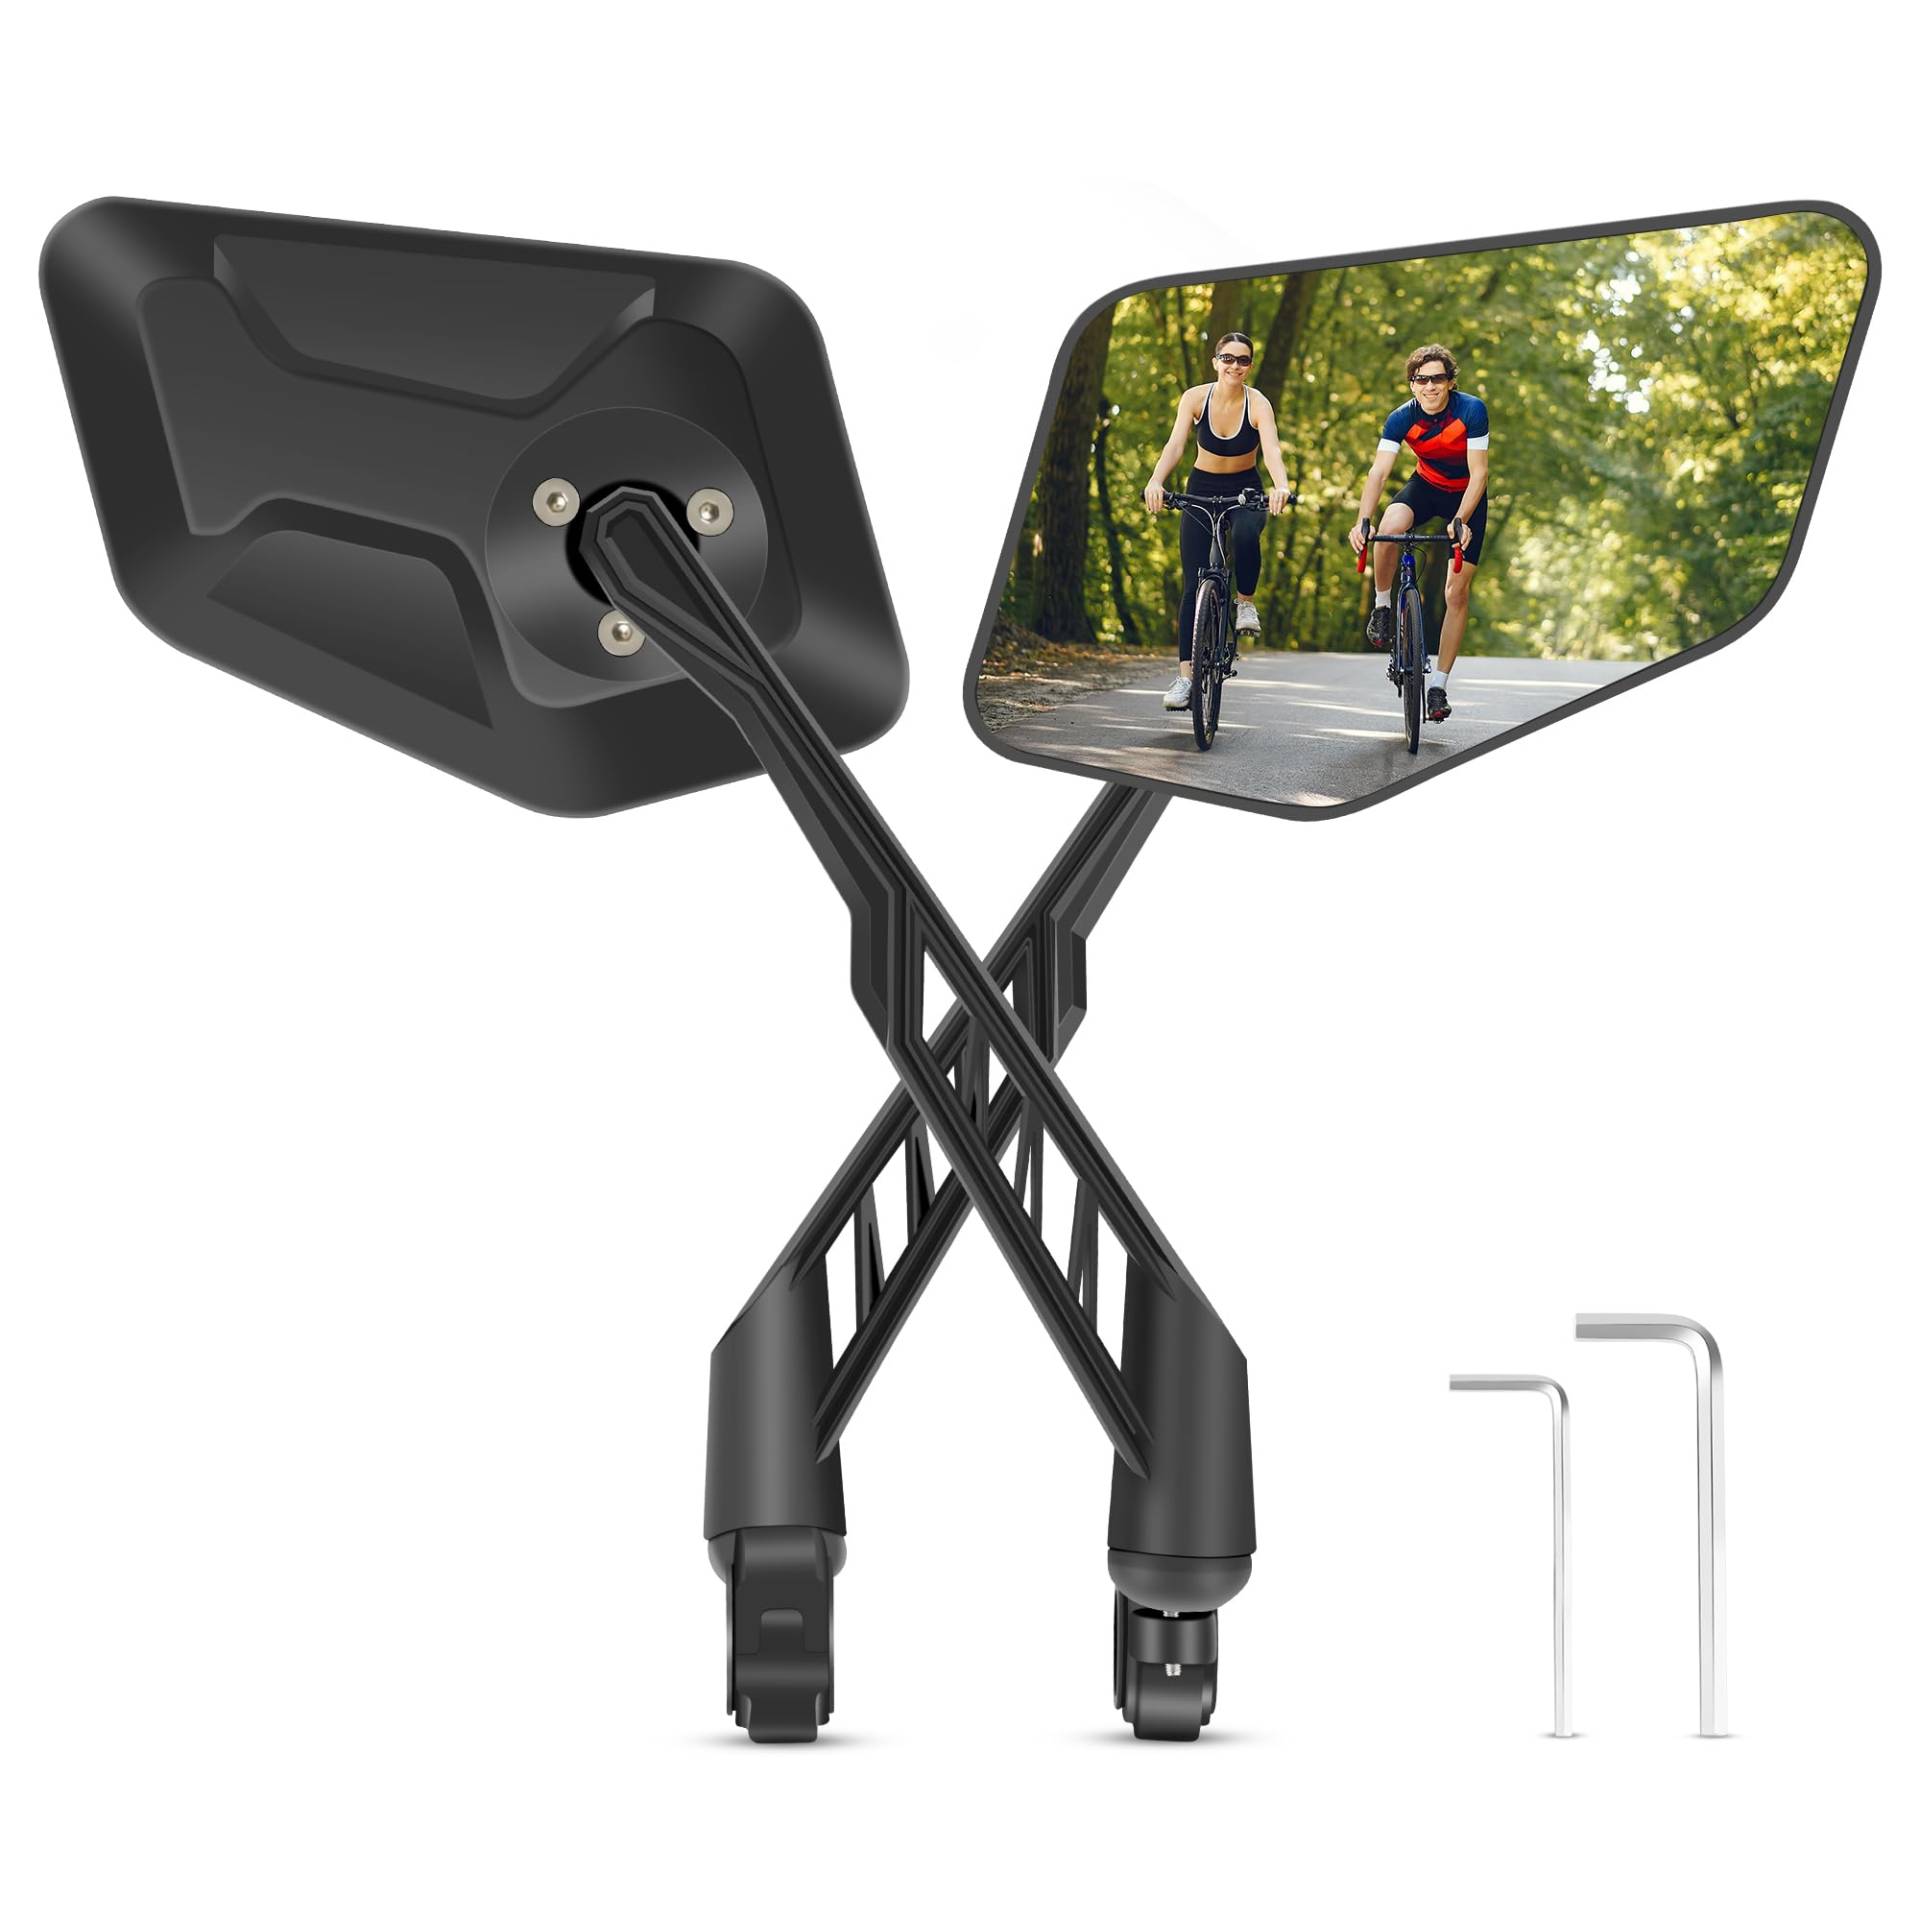 COICER Fahrradspiegel (rechts+links) mit extra großer Spiegelfläche - 360° verstellbarer Fahrrad Spiegel für E-Bike & E-Scooter Lenker - Rückspiegel kompatibel mit allen Modellen (Set rechts+links) von COICER